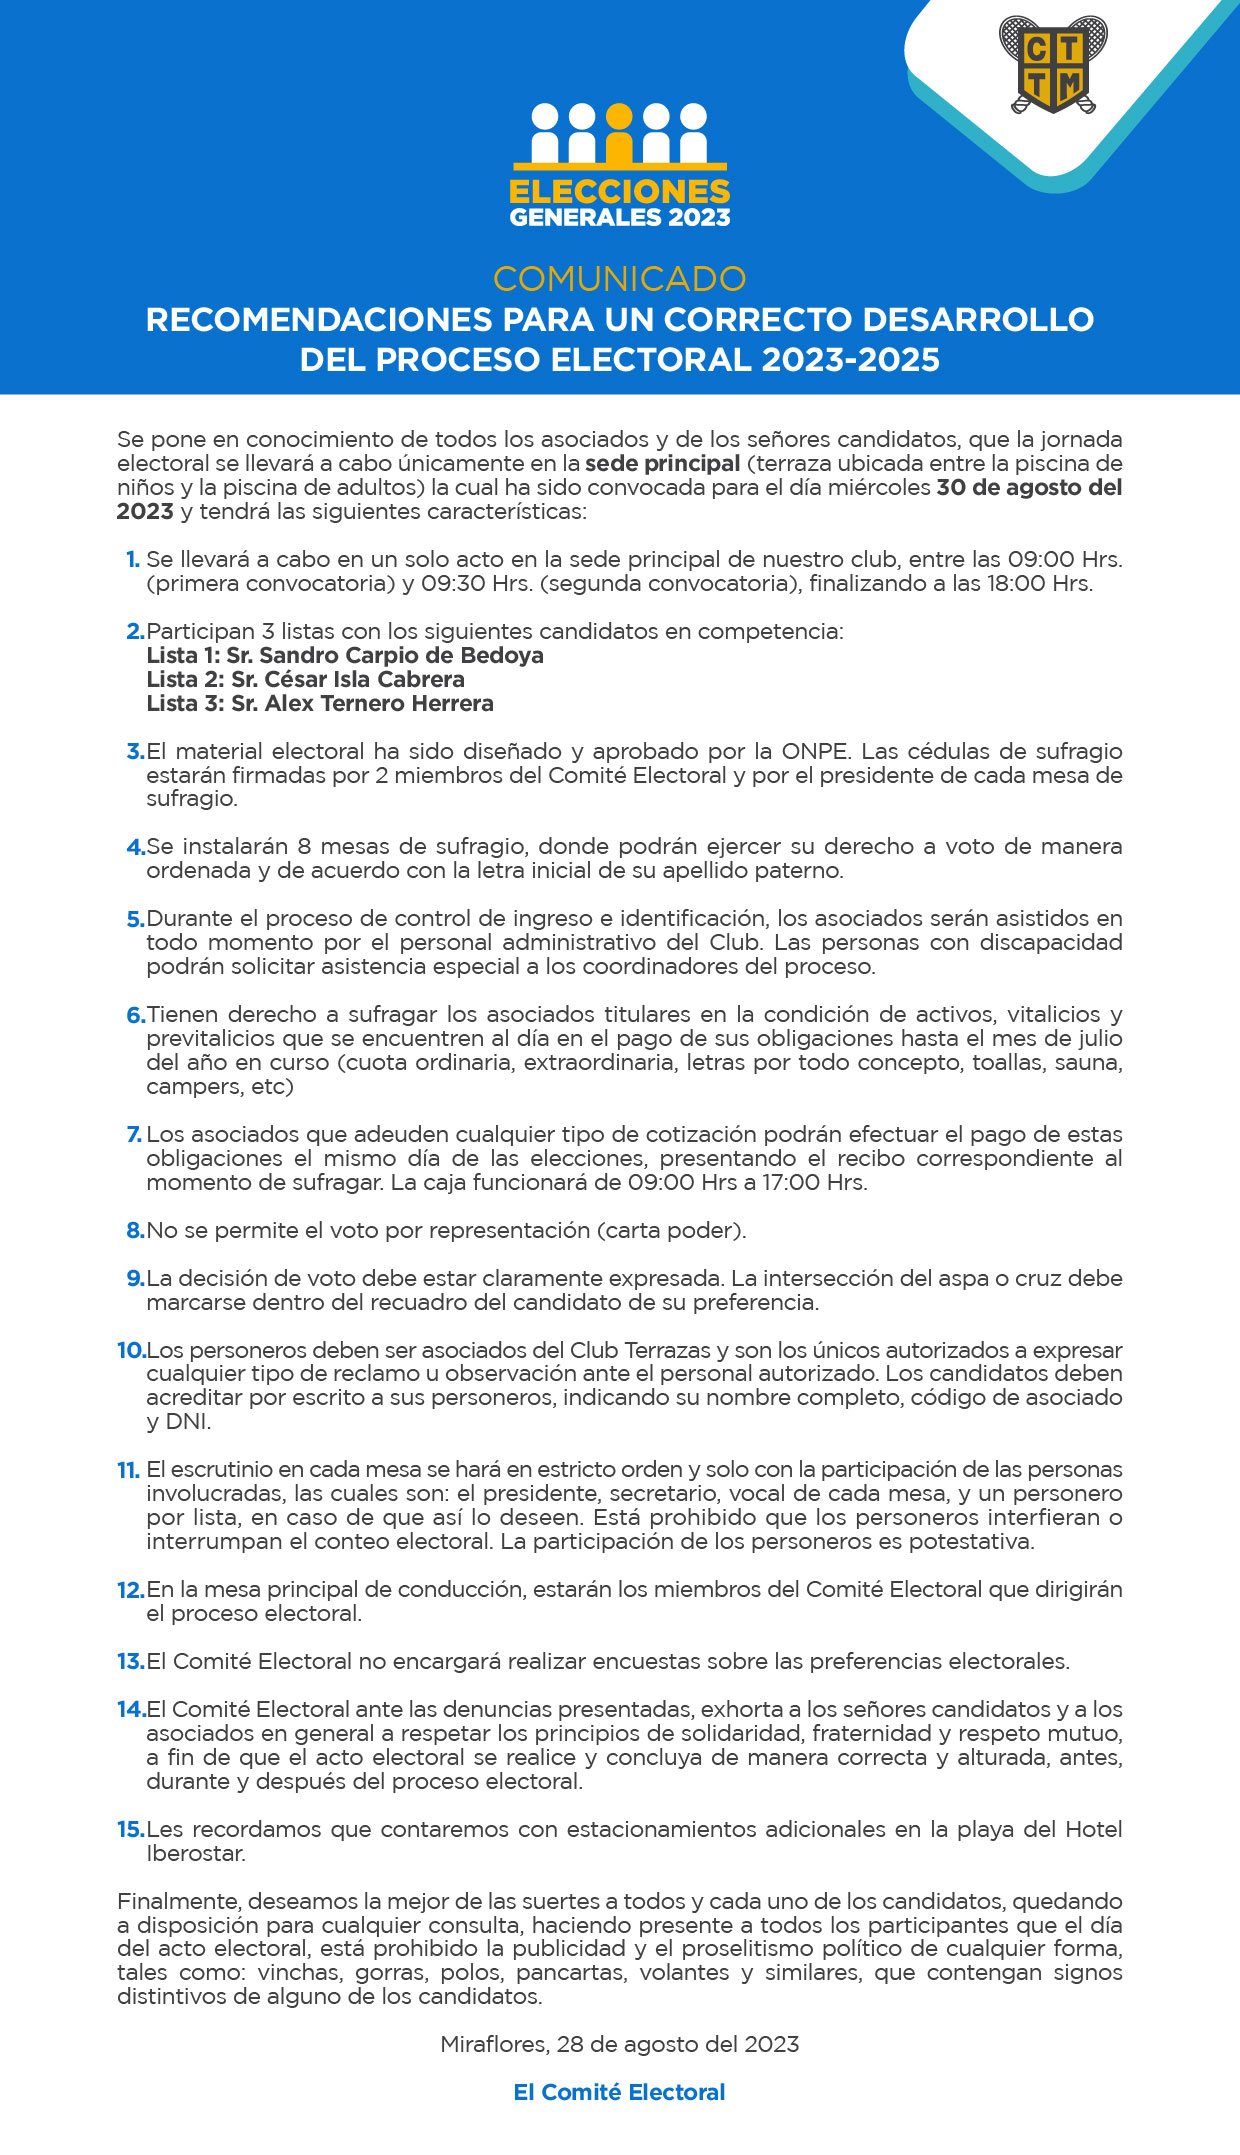 COMUNICADO: RECOMENDACIONES PARA UN CORRECTO DESARROLLO DEL PROCESO ELECTORAL 2023-2025